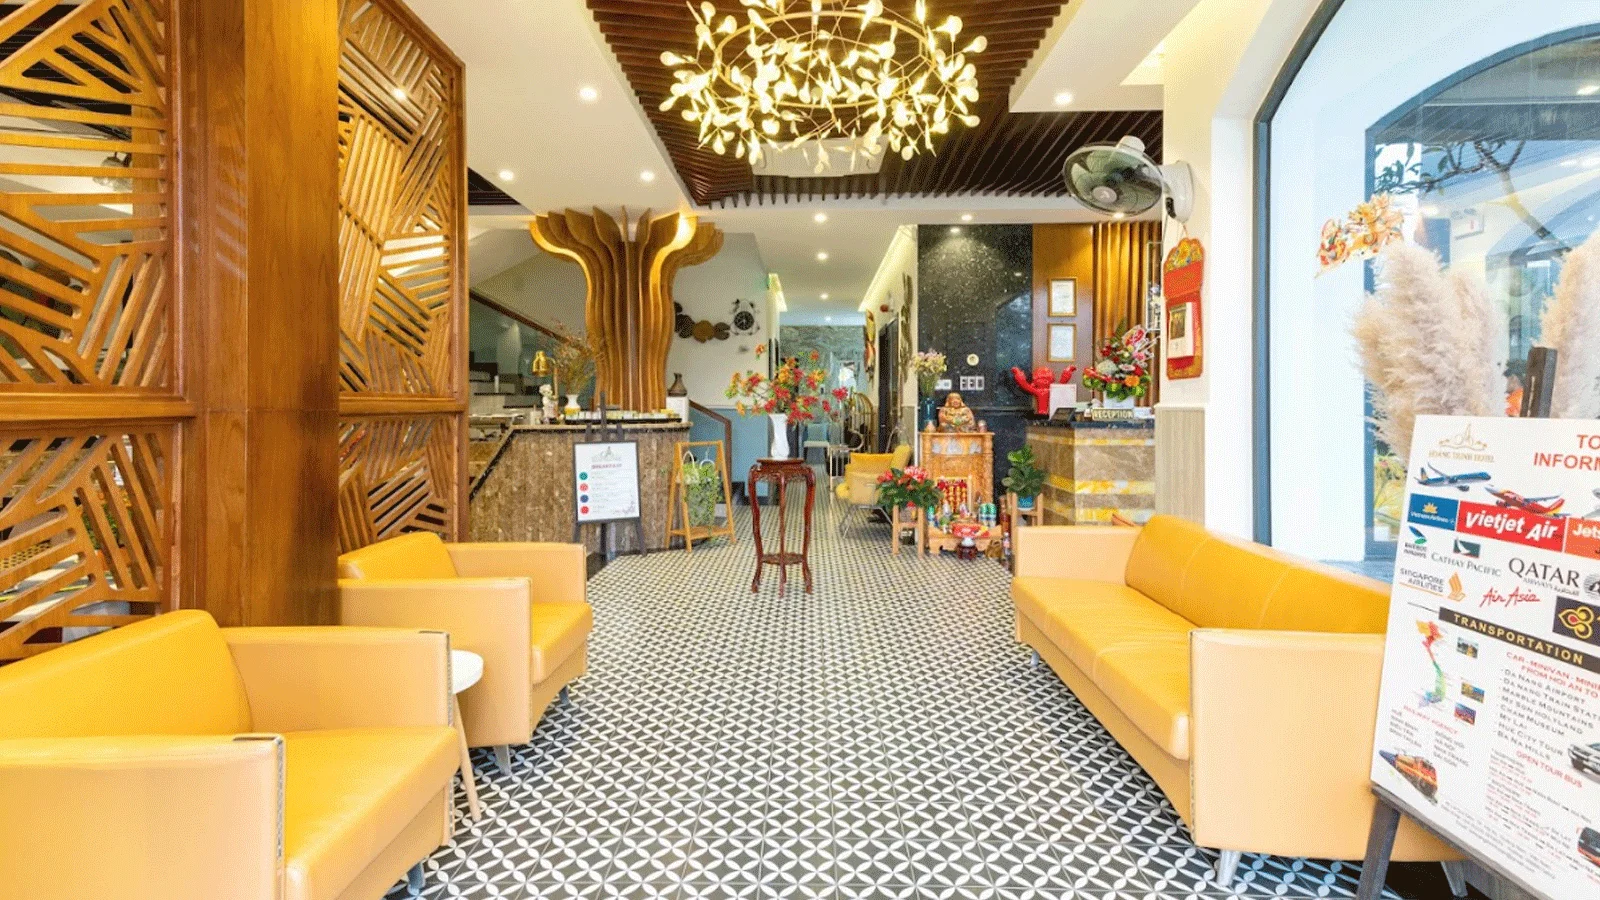 Khách sạn Hoàng Trinh Hotel Hội An